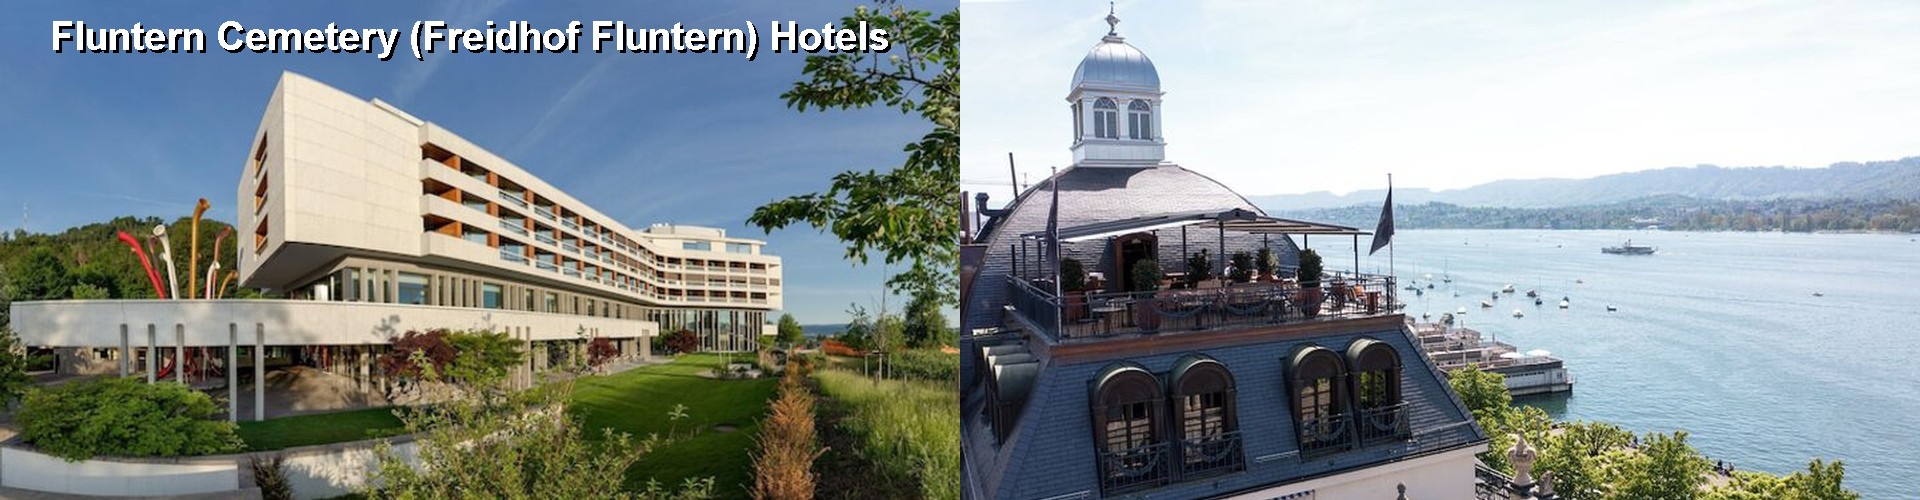 5 Best Hotels near Fluntern Cemetery (Freidhof Fluntern)